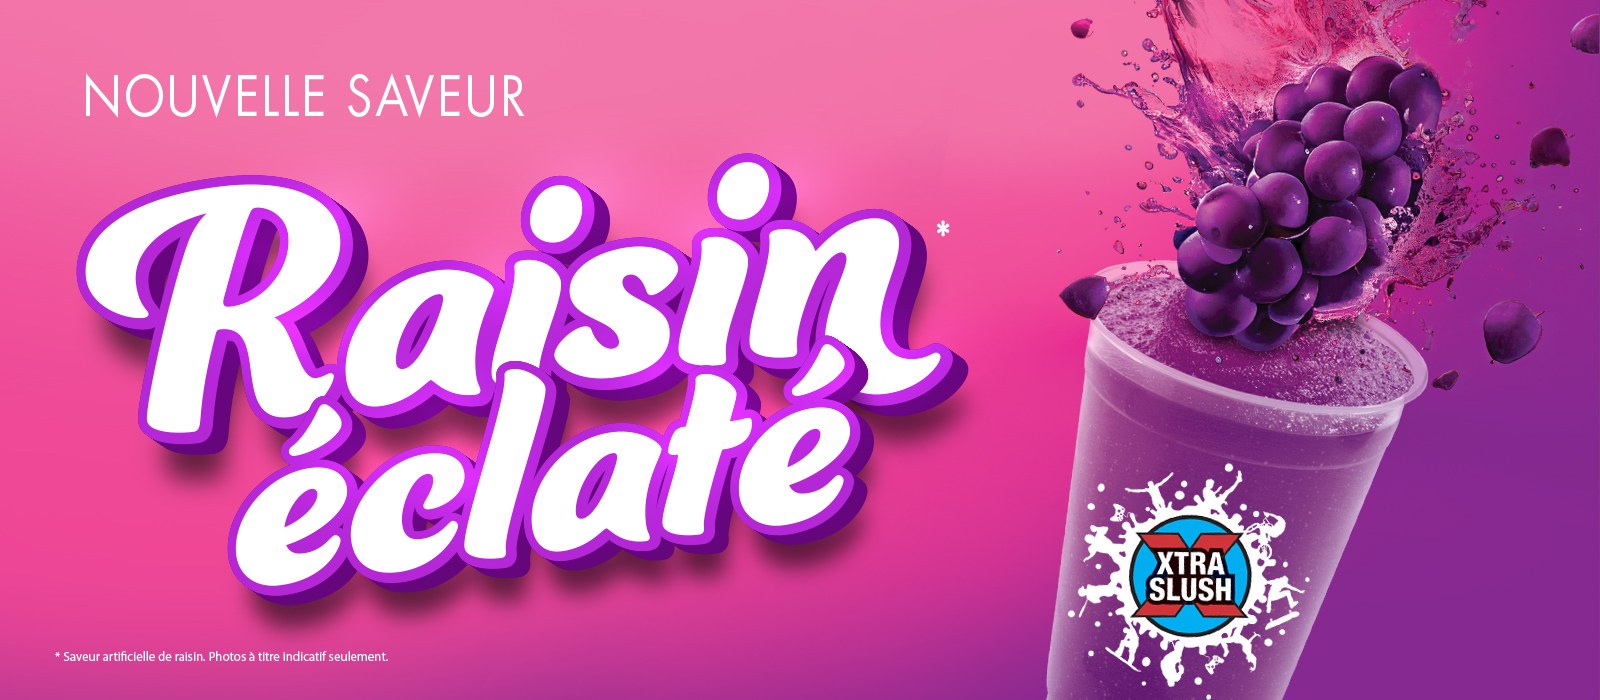 Graphique coloré faisant la promotion de la nouvelle saveur d'éclat de raisin de Xtra Slush !